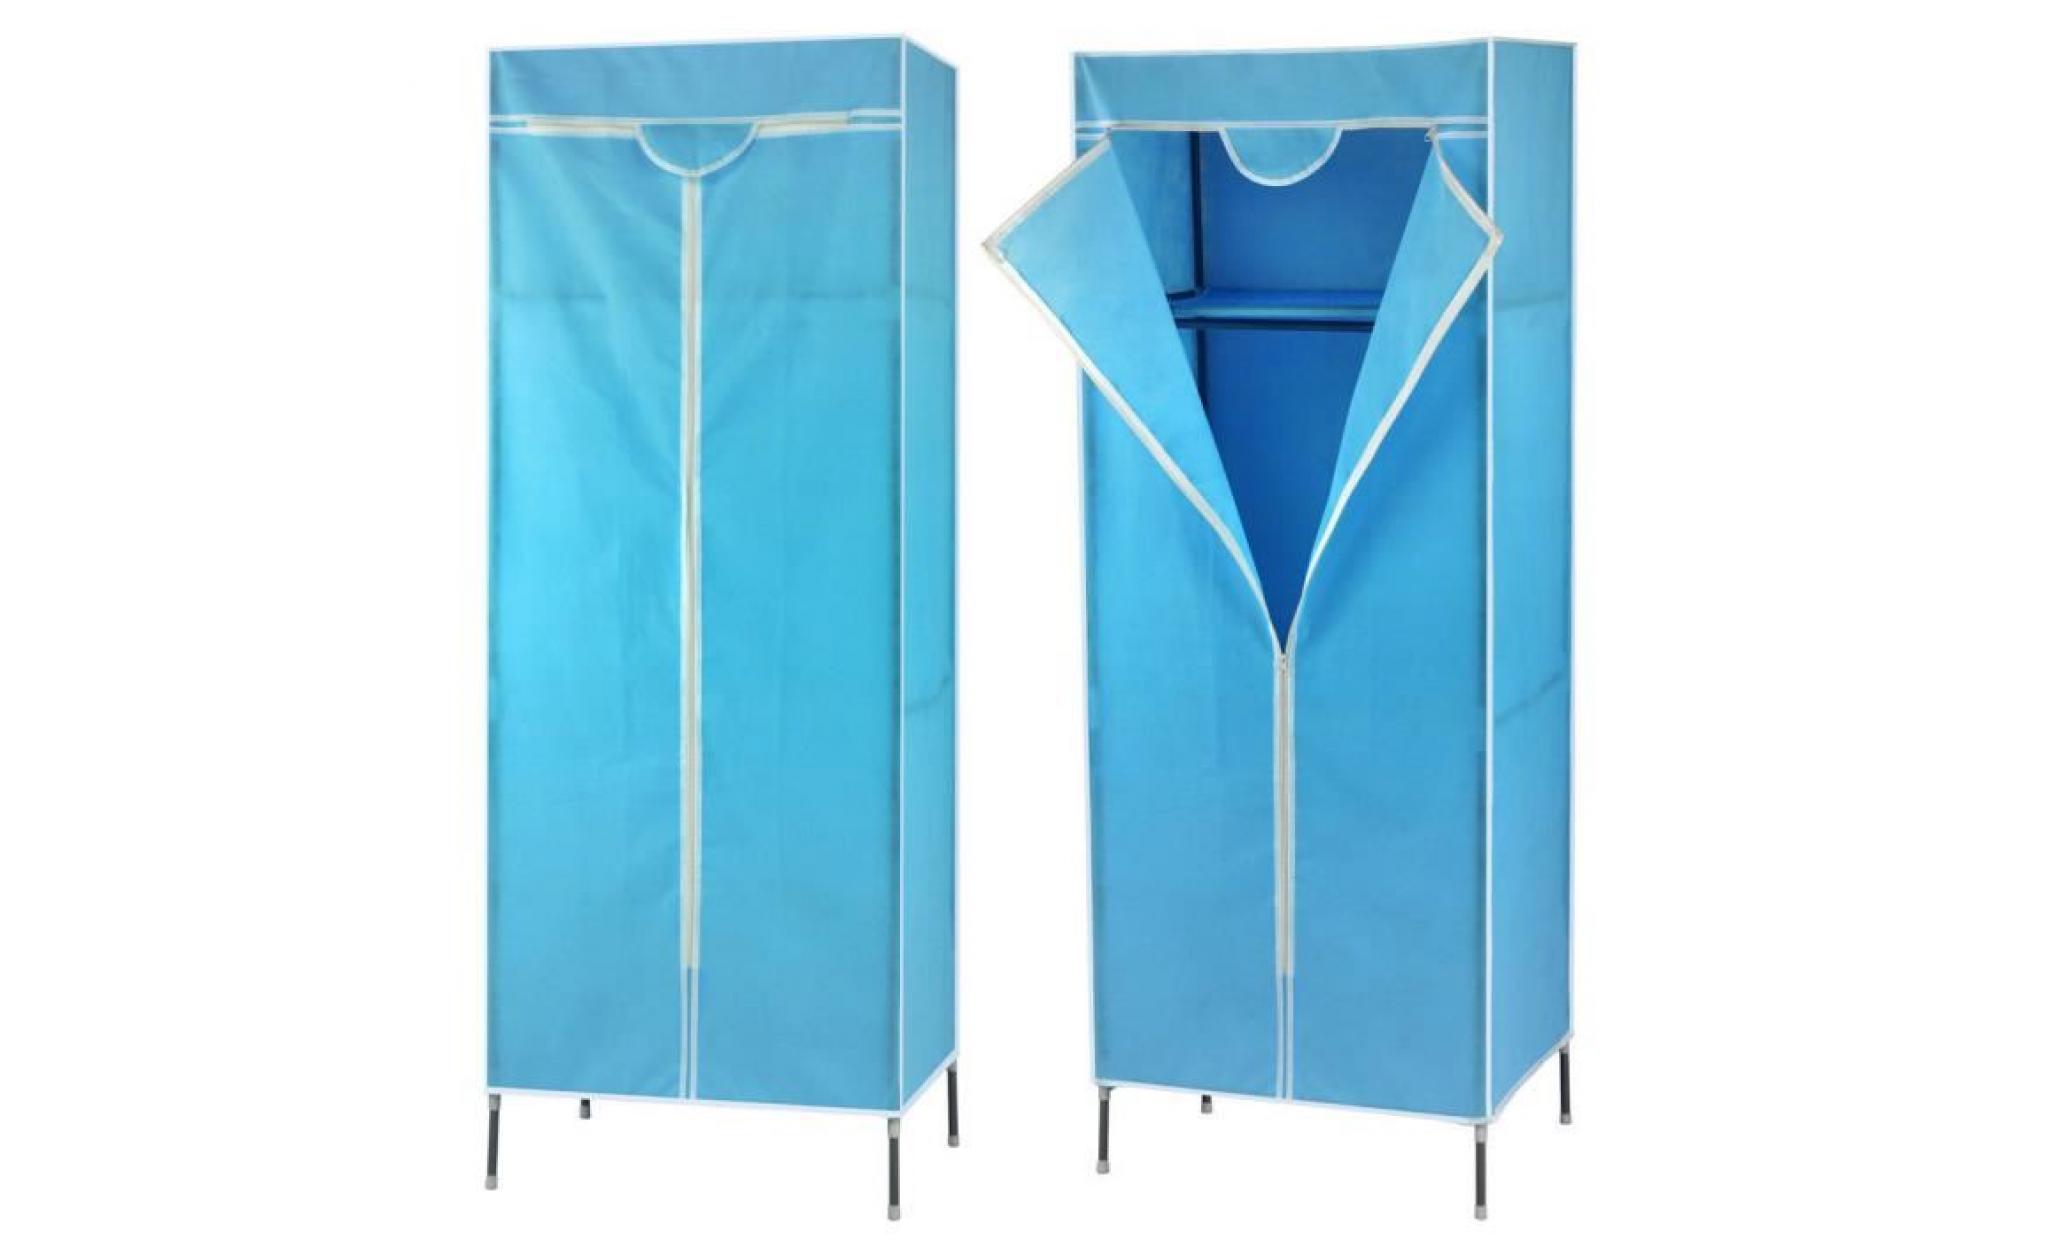 1x armoire en toile bleu étagère diy de rangement rack suspendu manteau organisateur lingerie 156cm   xy fr